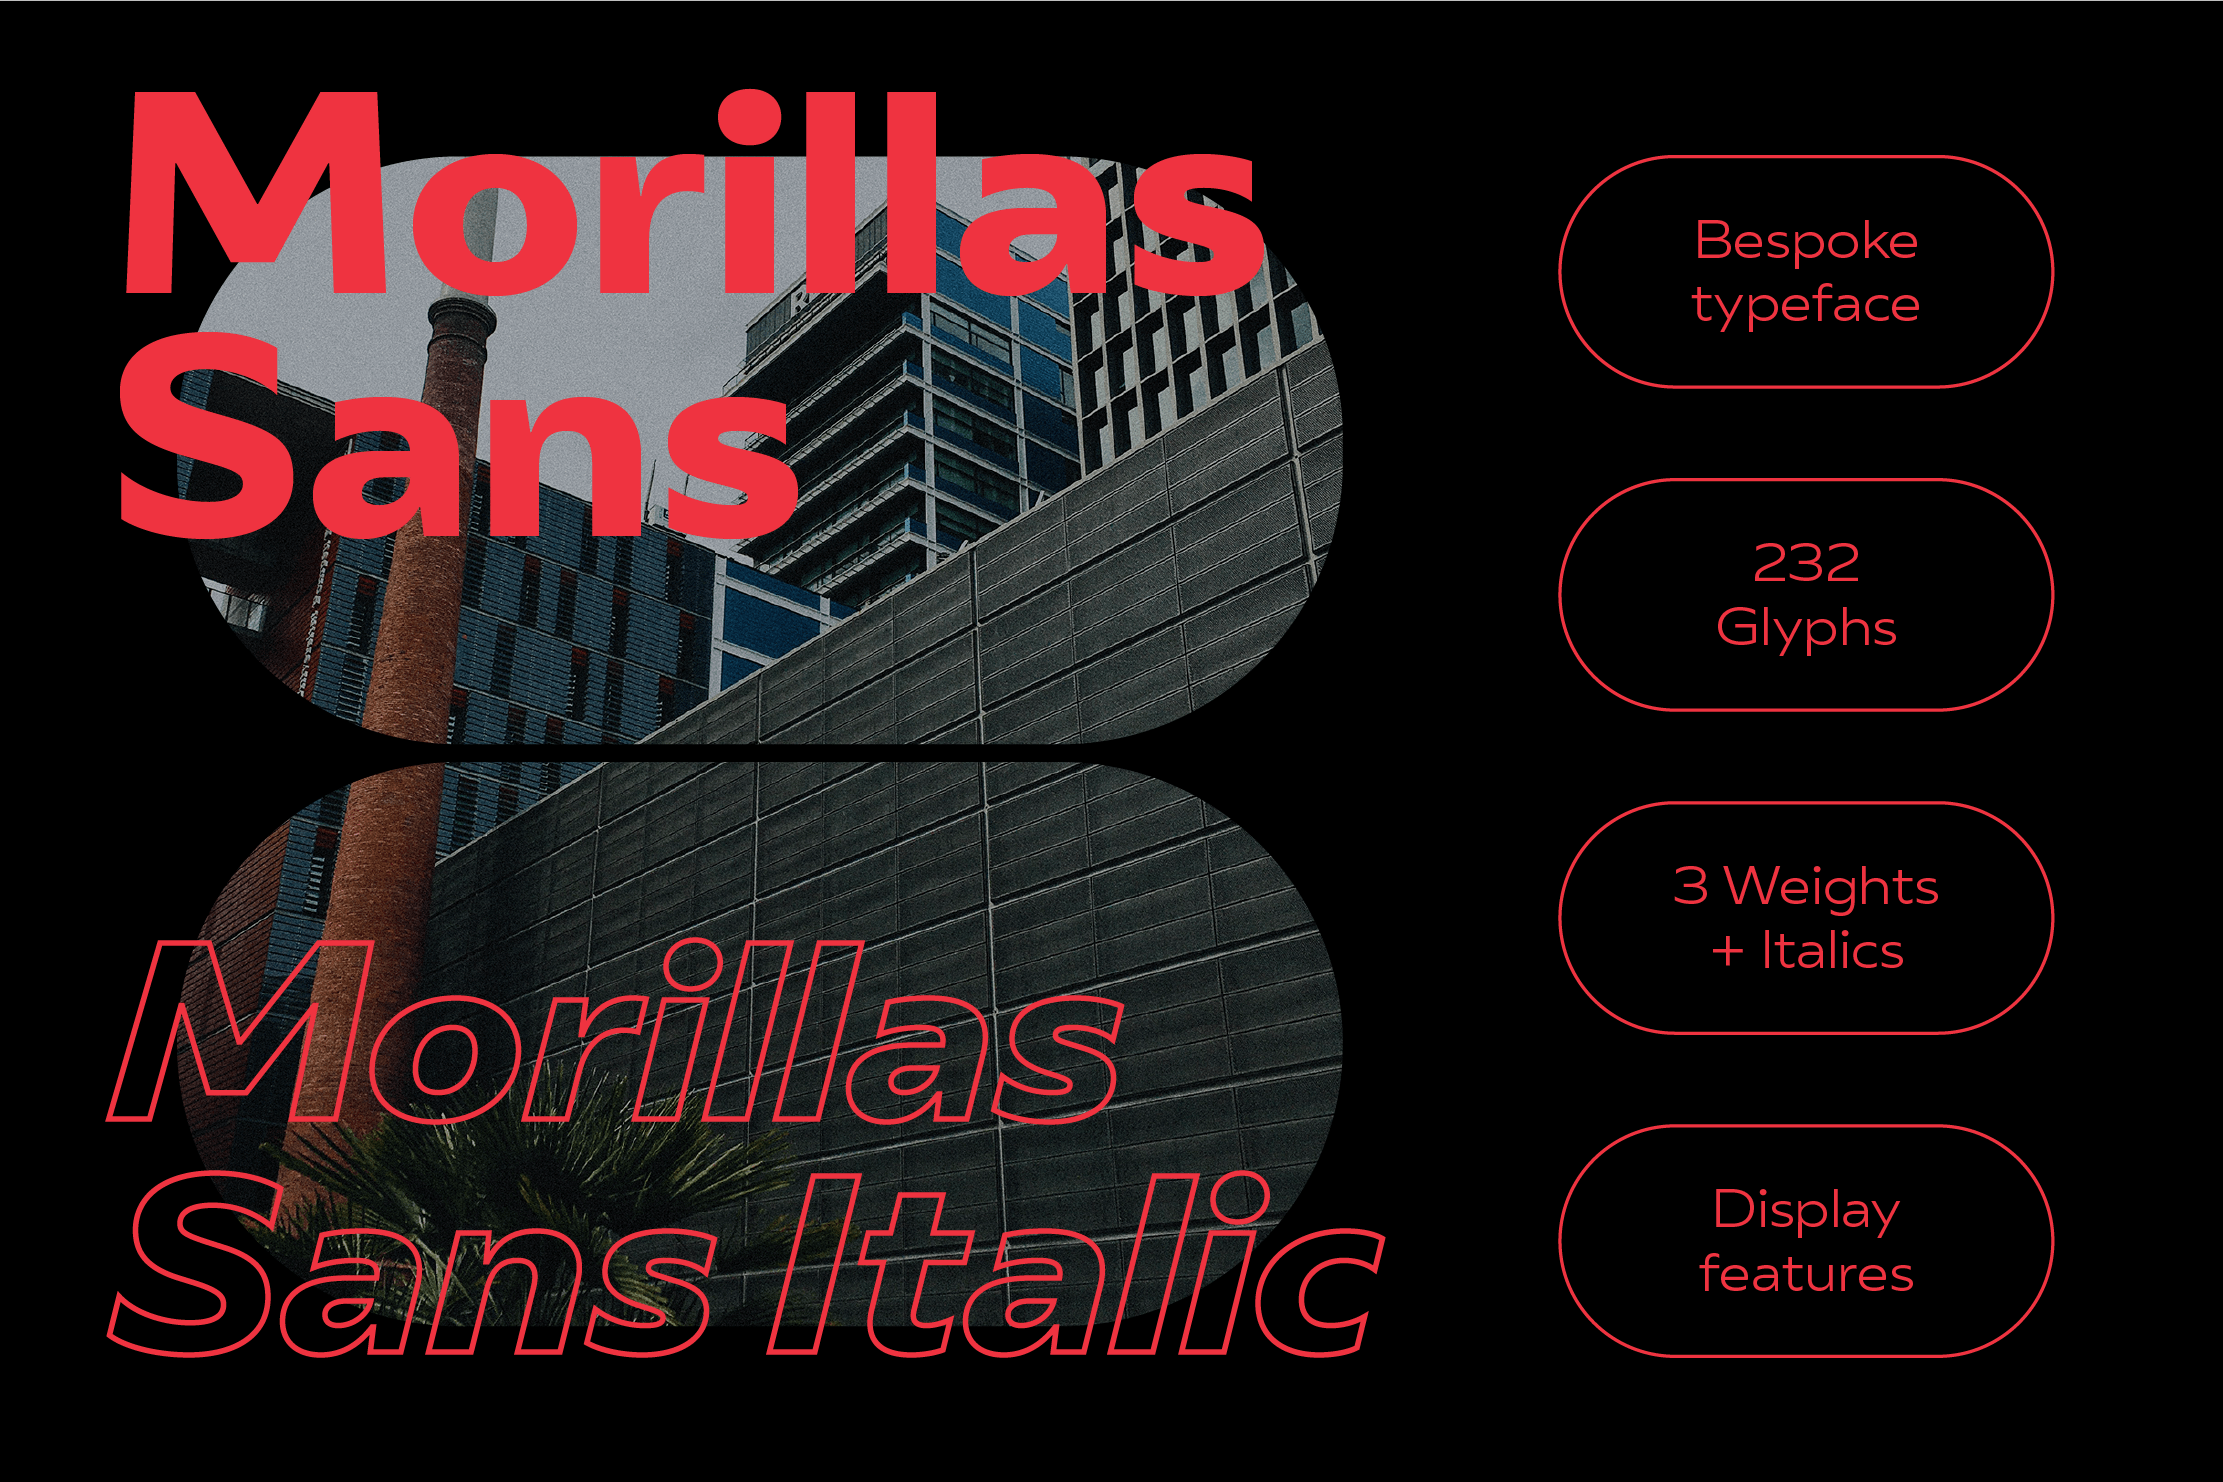 Morillas Creates a New Typeface Morillas Sans